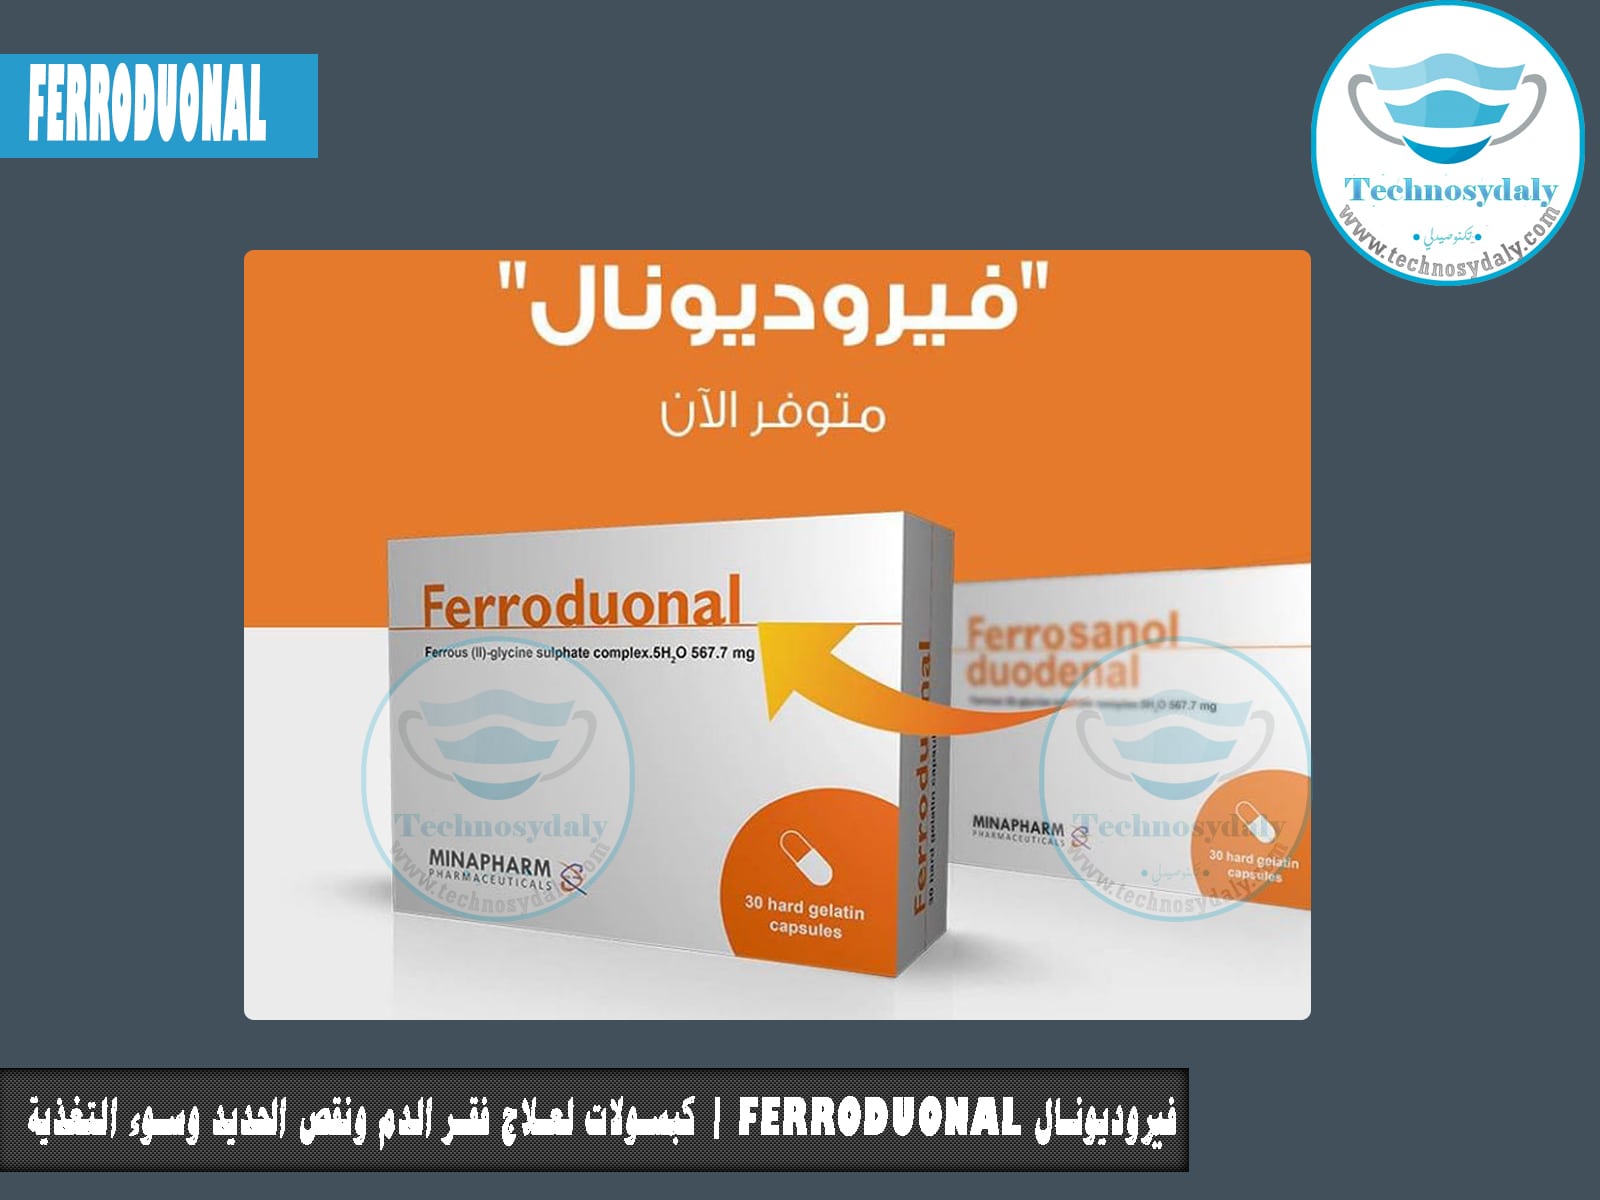 فيروديونال Ferroduonal | كبسولات لعلاج فقر الدم ونقص الحديد وسوء التغذية